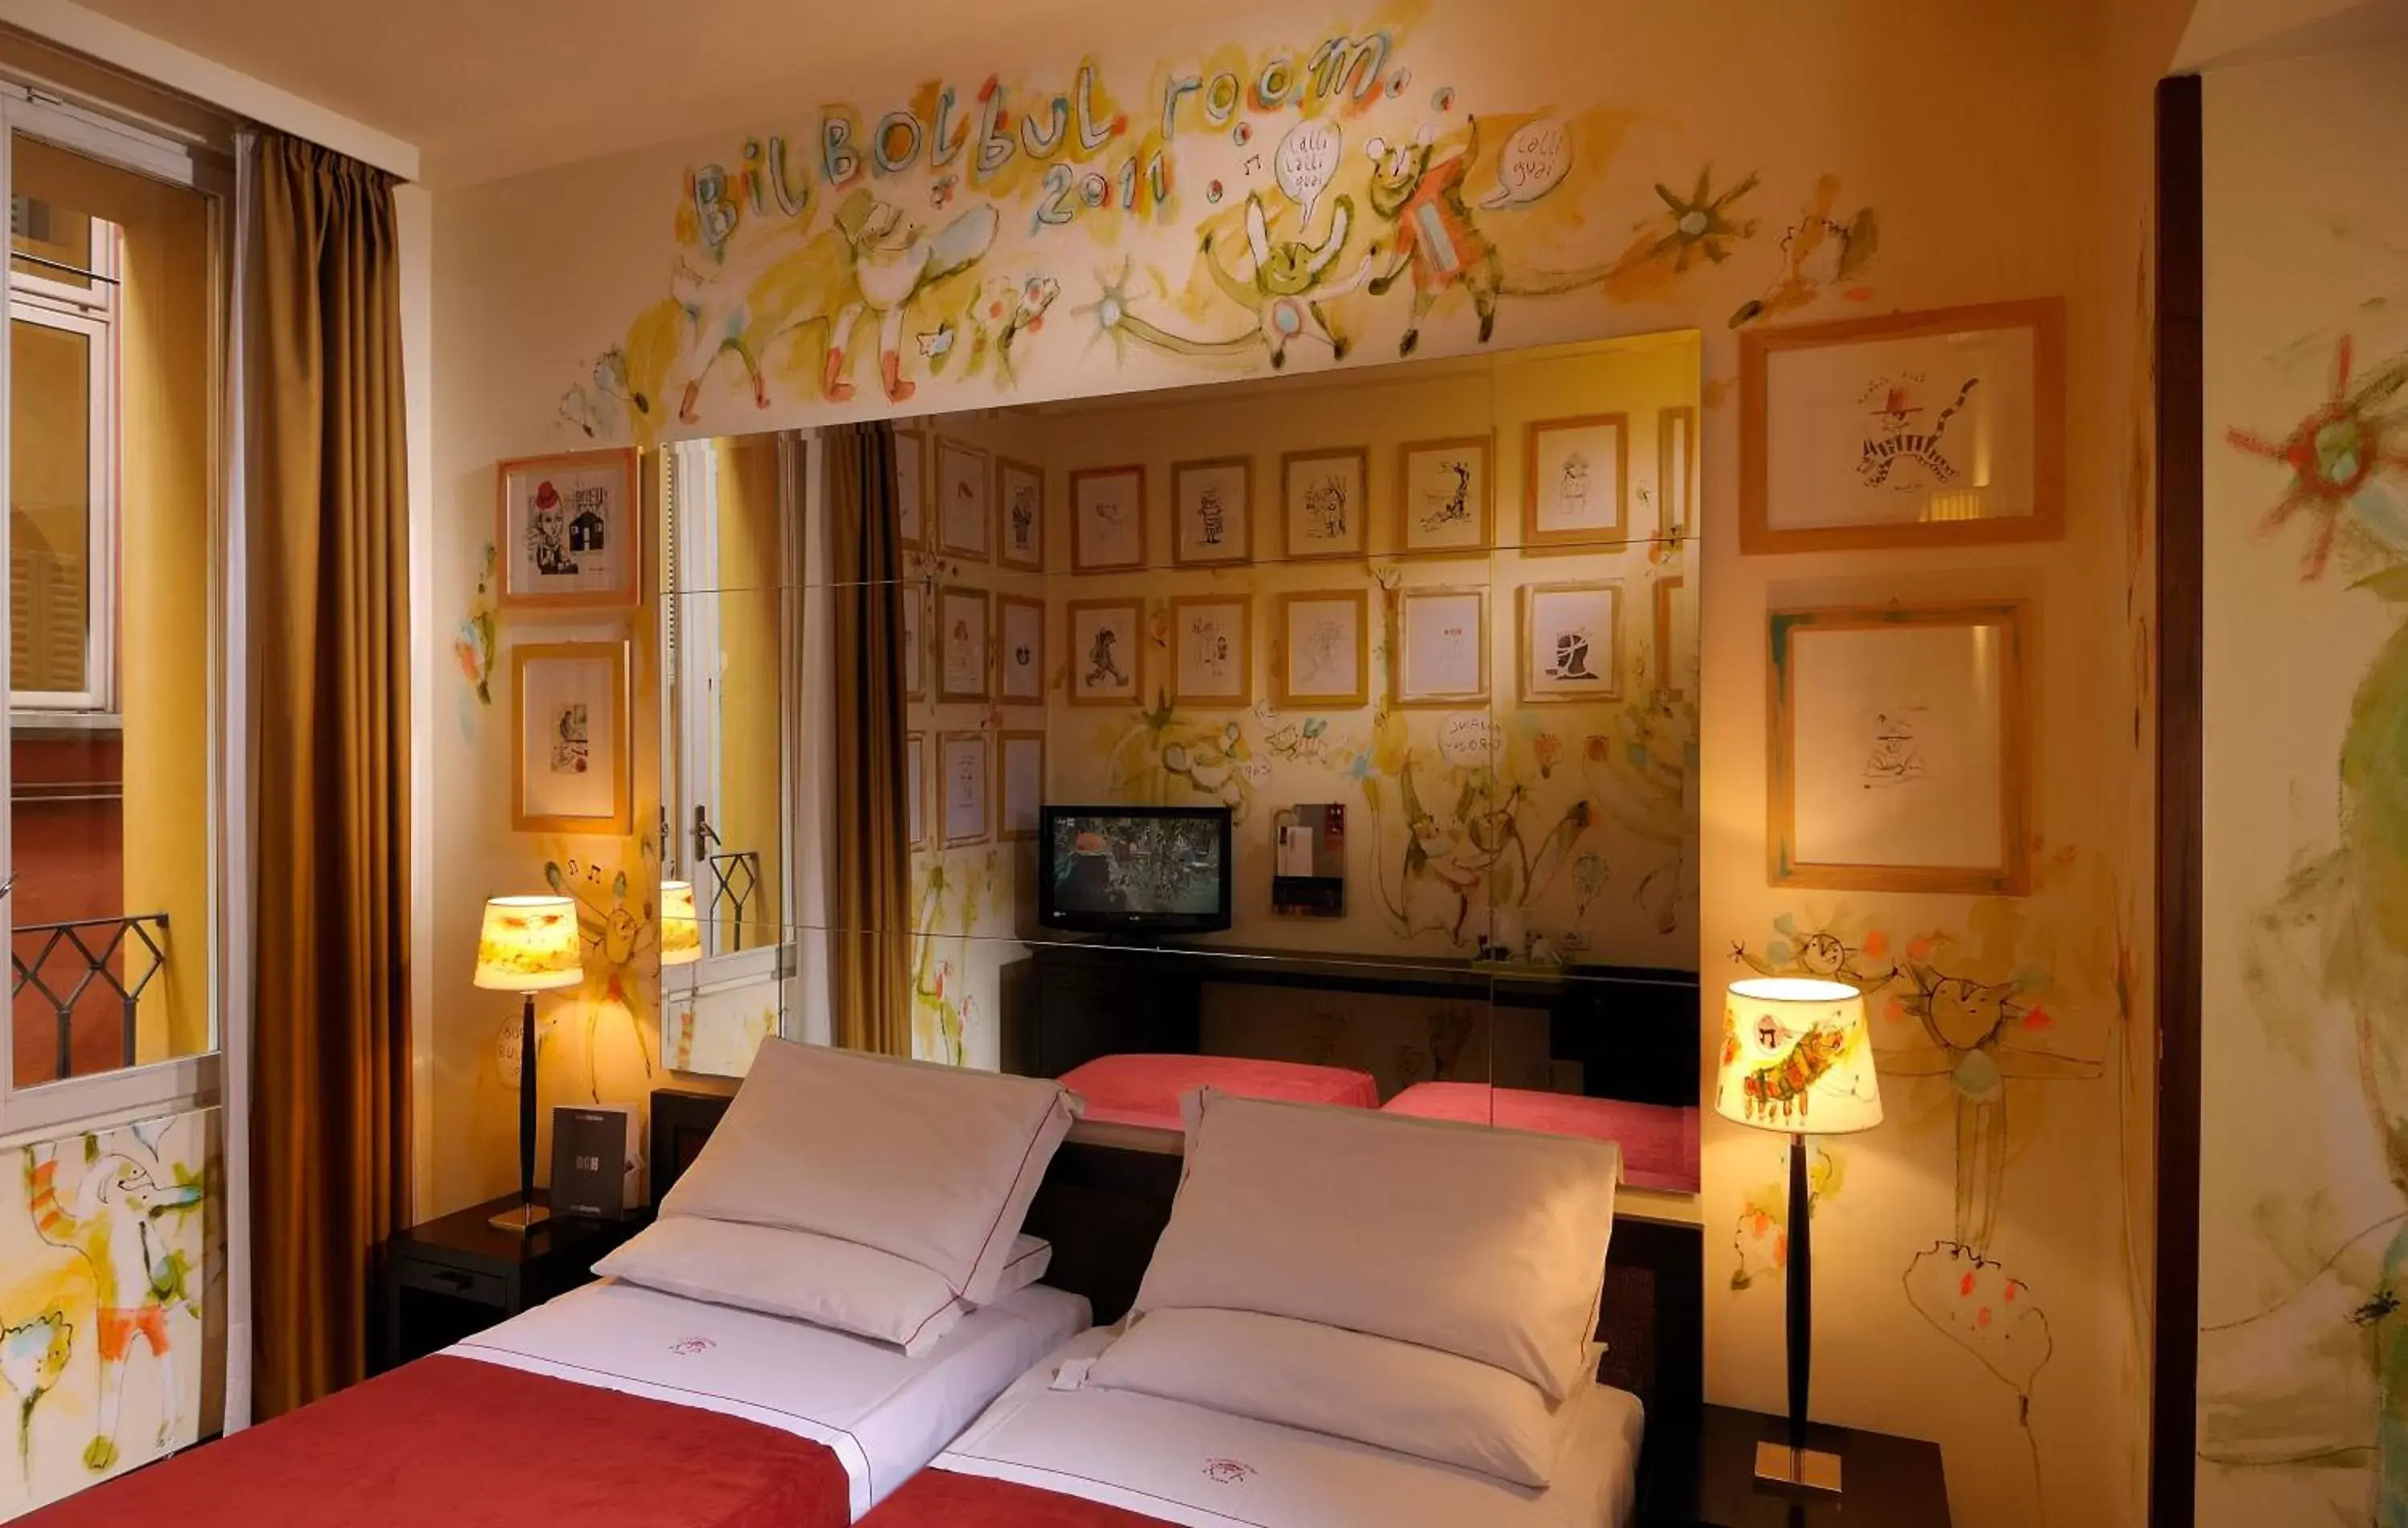 Bedroom, Bed in PHI HOTEL BOLOGNA "Al Cappello Rosso"